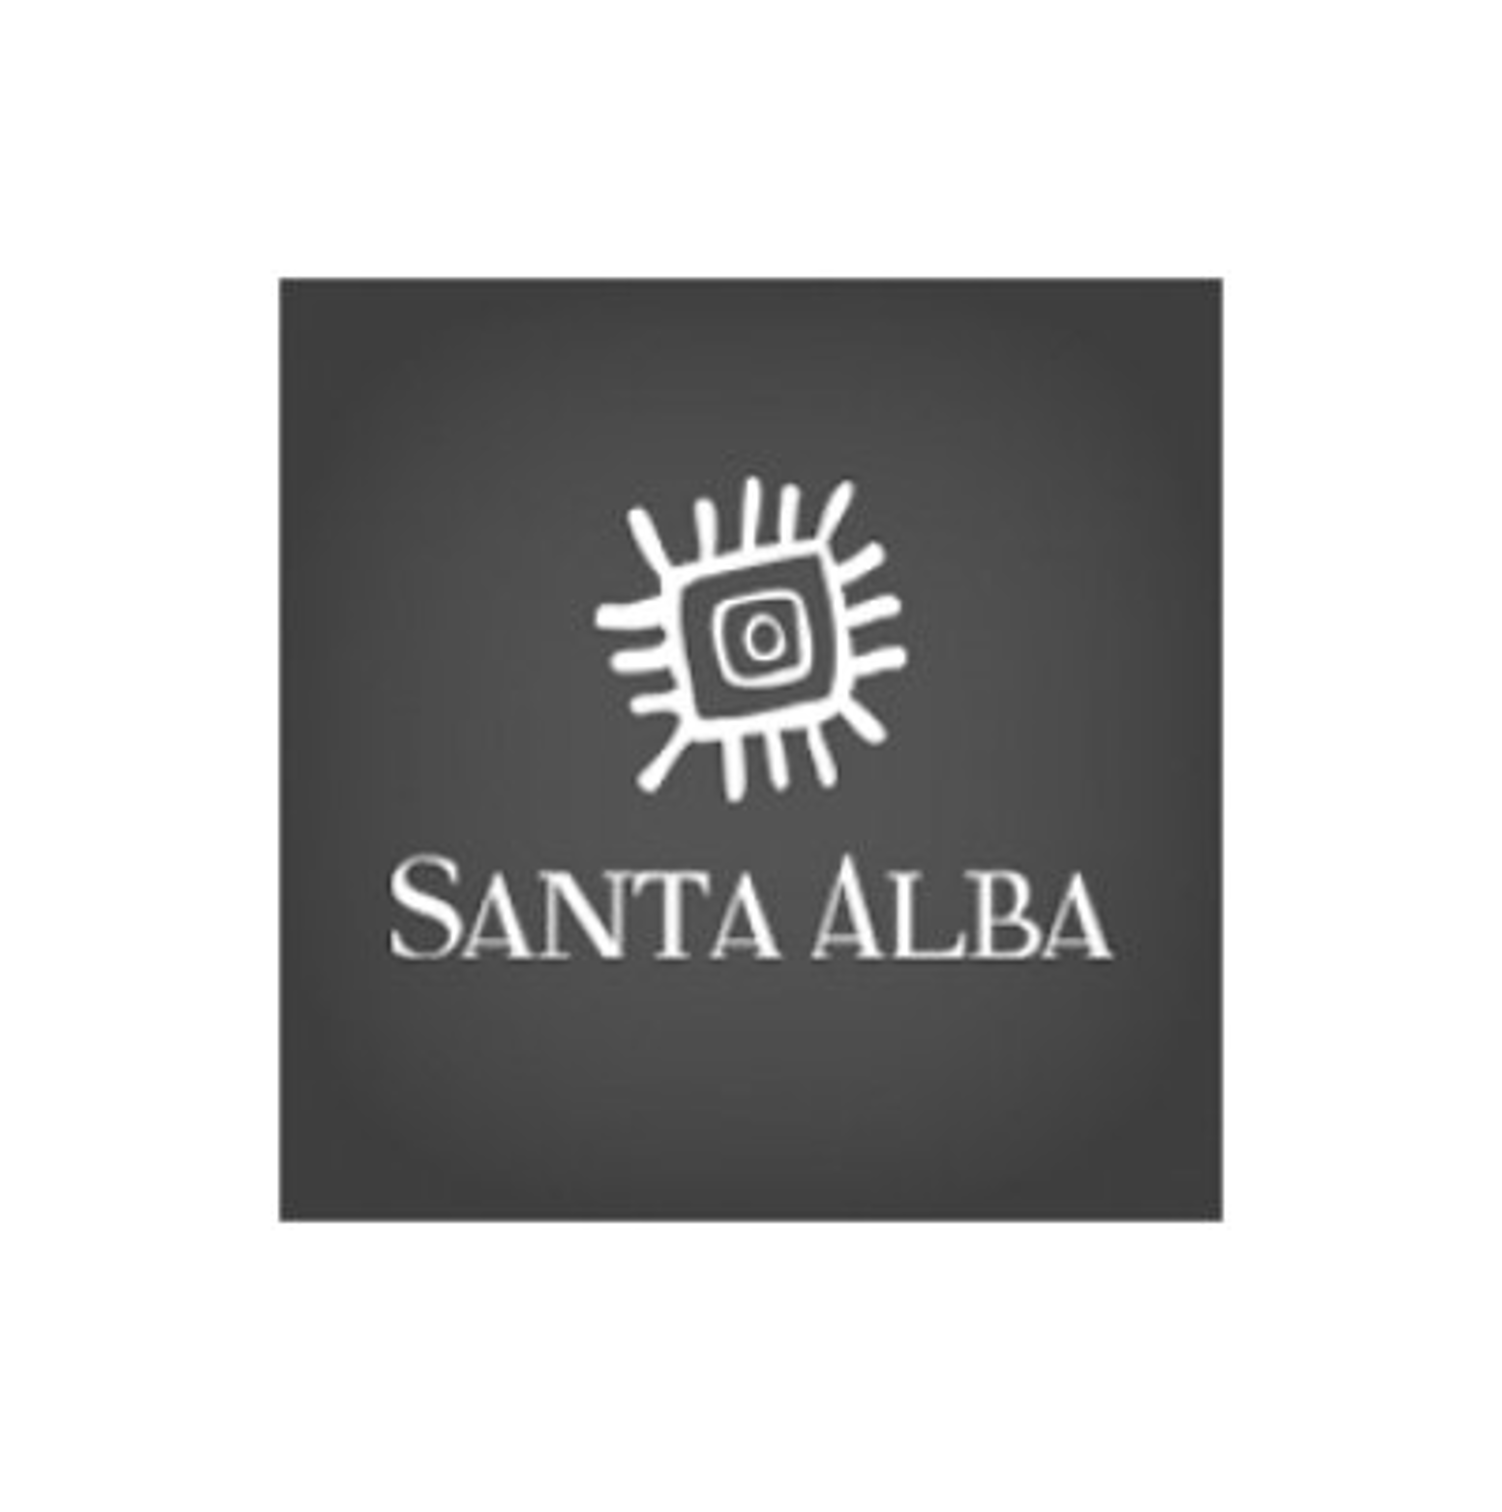 Santa Alba